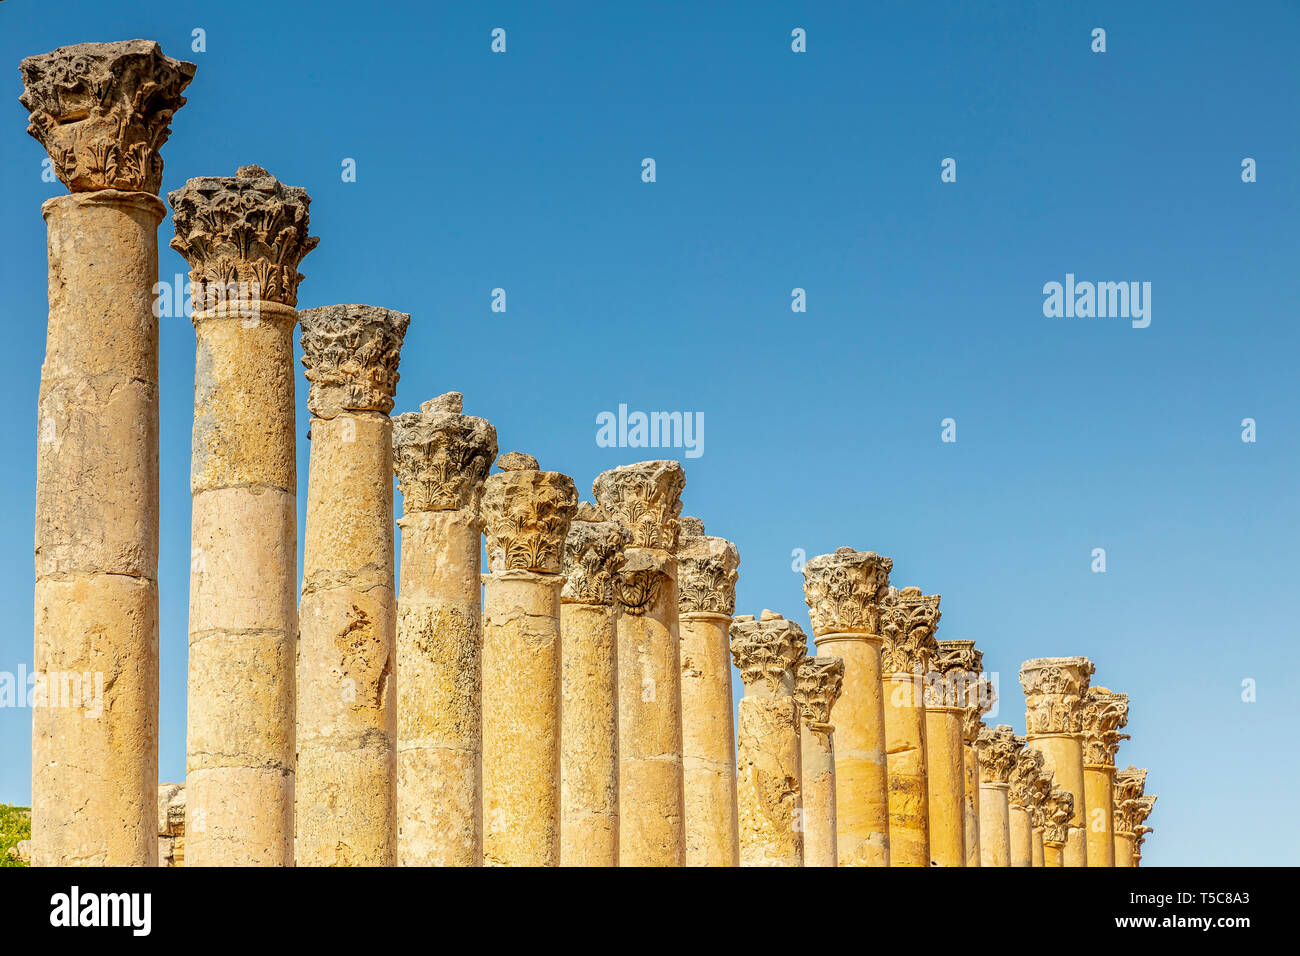 Amman, Jordanien. Detail von Römischen Säulen im Inneren der Zitadelle, bekannte archäologische Stätte des Tourismus Ziel. Stockfoto